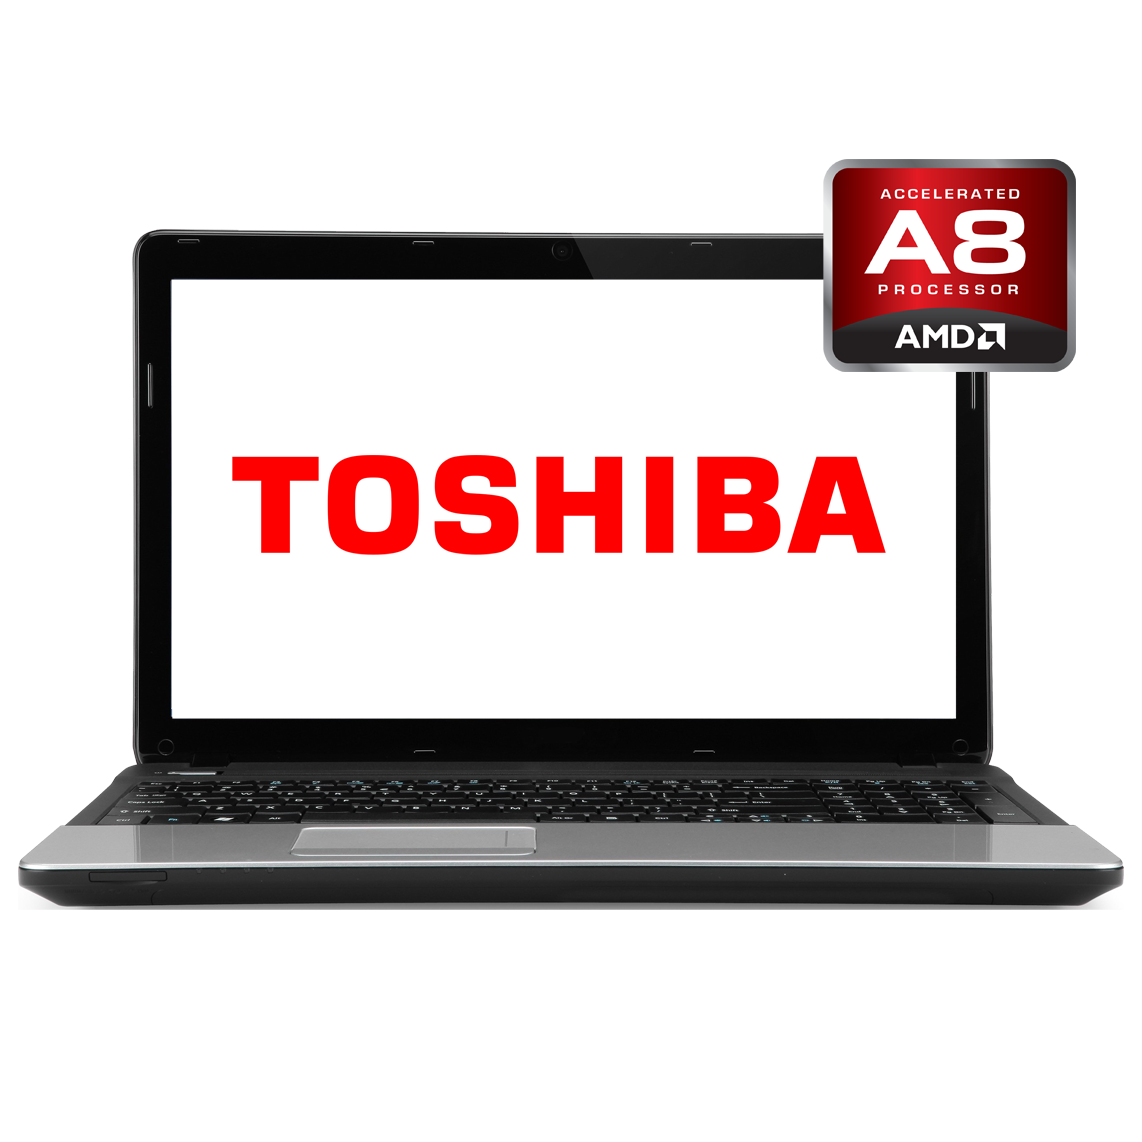 Toshiba - 14 inch AMD A8